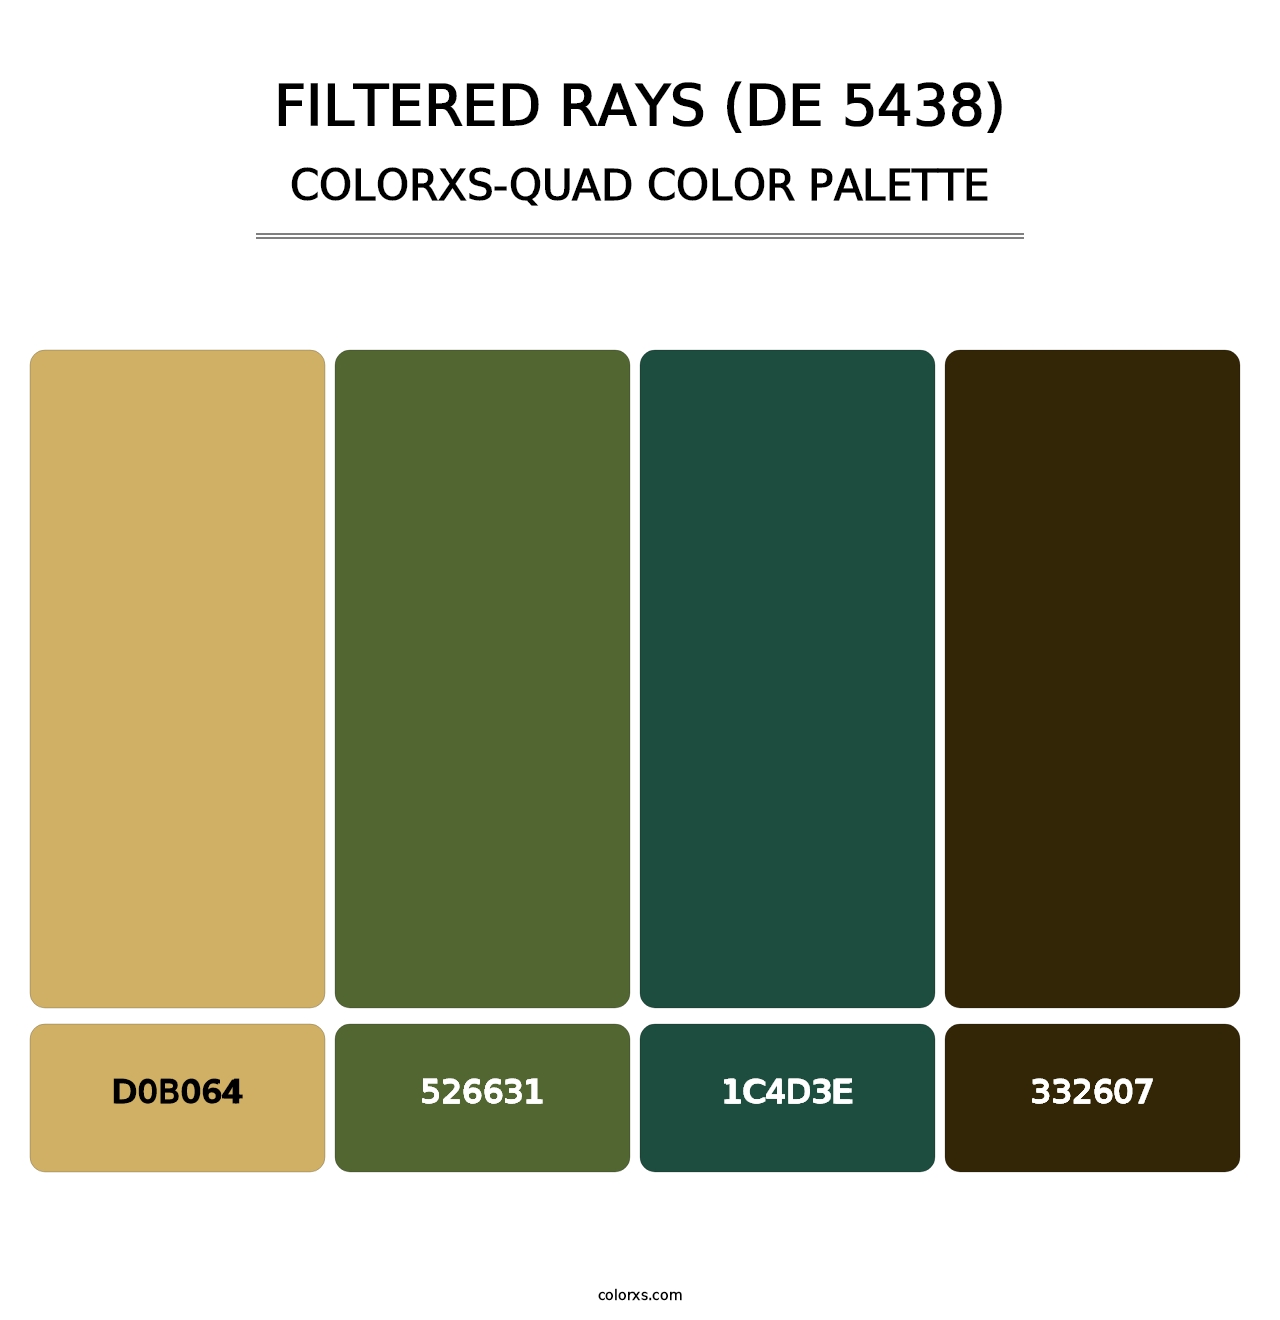 Filtered Rays (DE 5438) - Colorxs Quad Palette